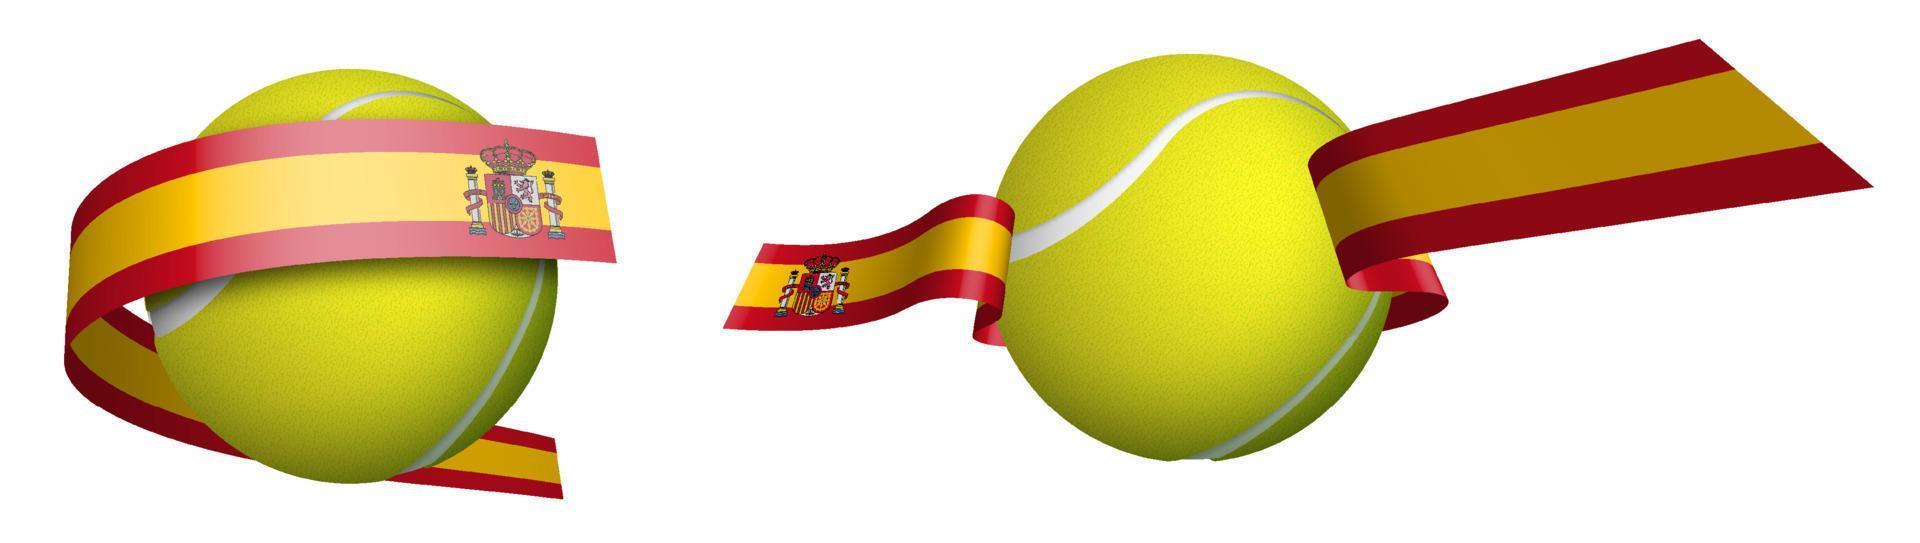 Deportes tenis pelota en cintas con colores Español bandera. diseño elemento para competiciones mundo tenis competiciones aislado vector en blanco antecedentes